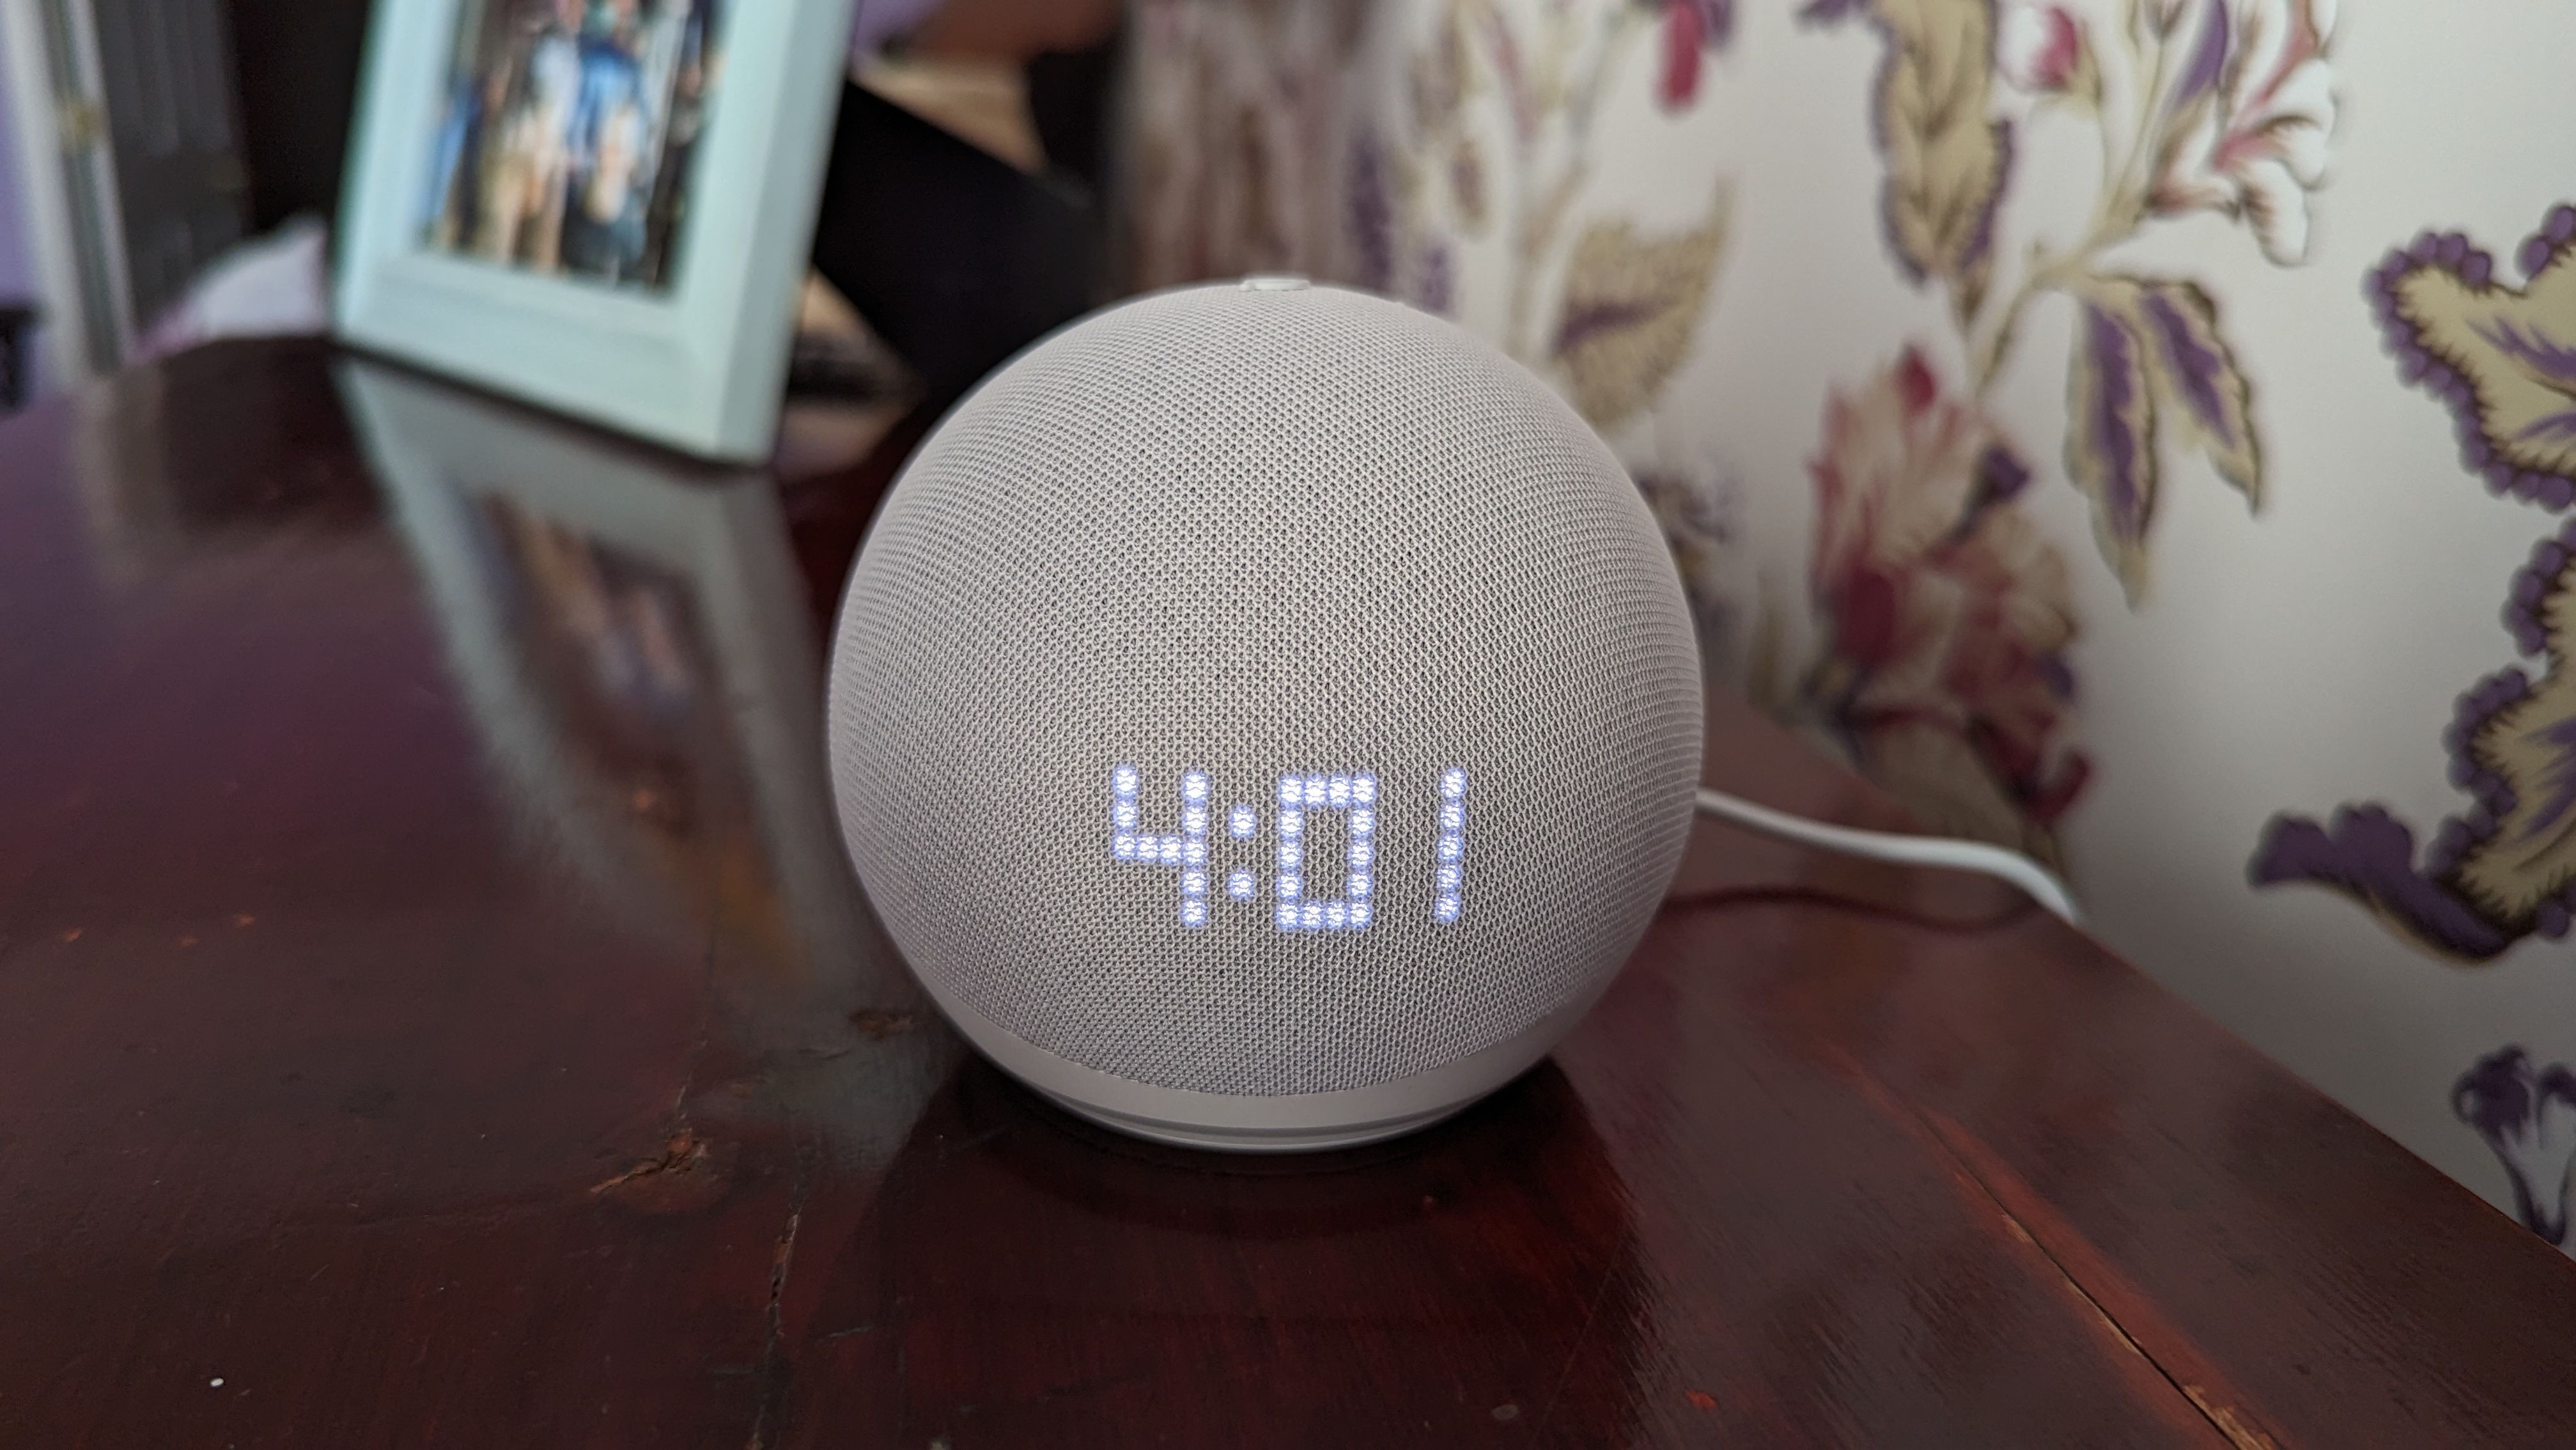 Echo Studio Smart Speaker : Target